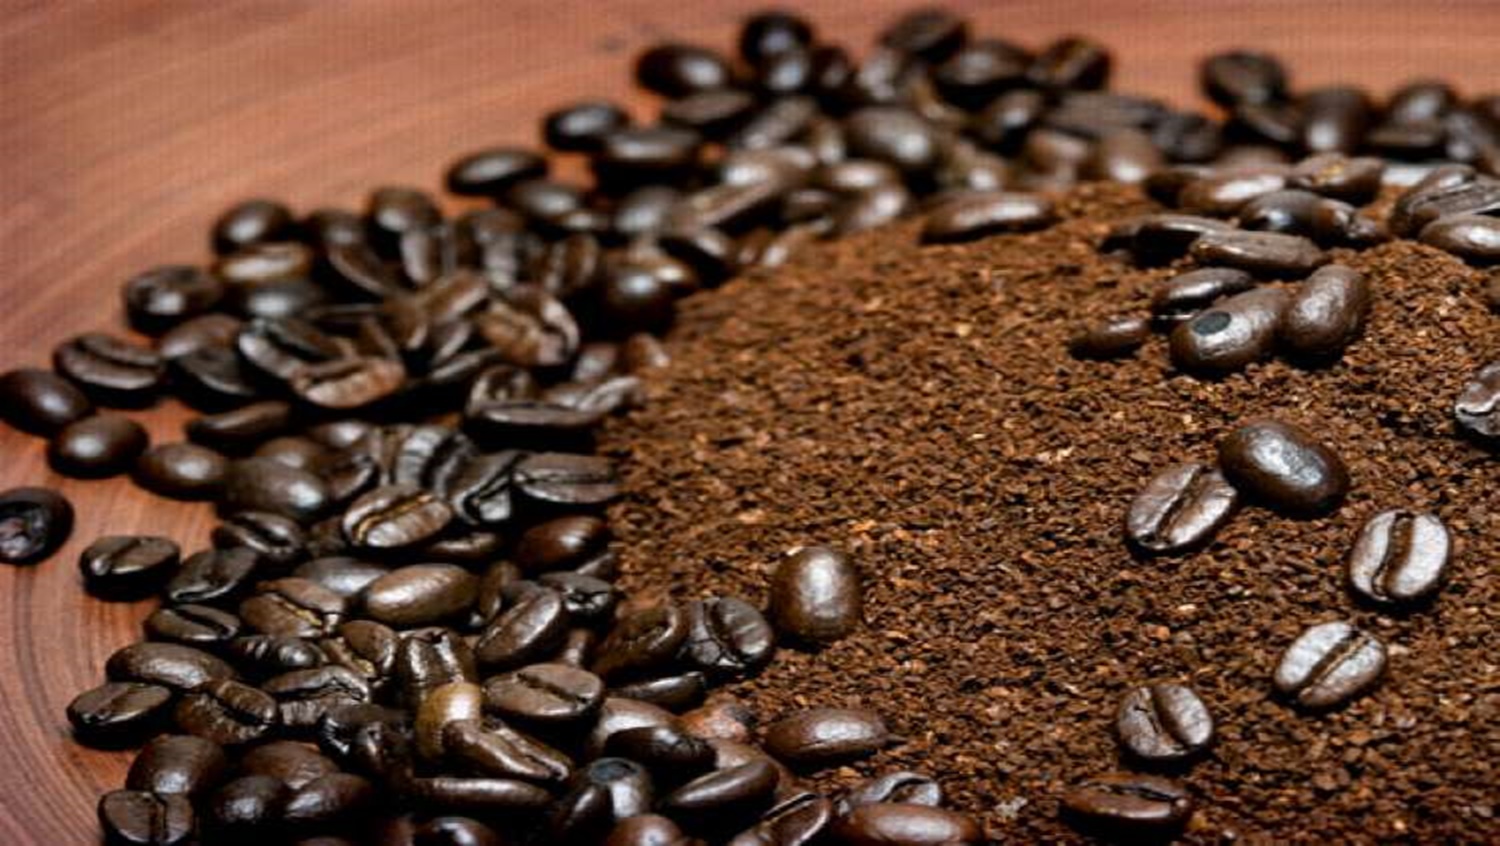 MELHORIA: Debate sobre nova norma padrão de classificação para café torrado